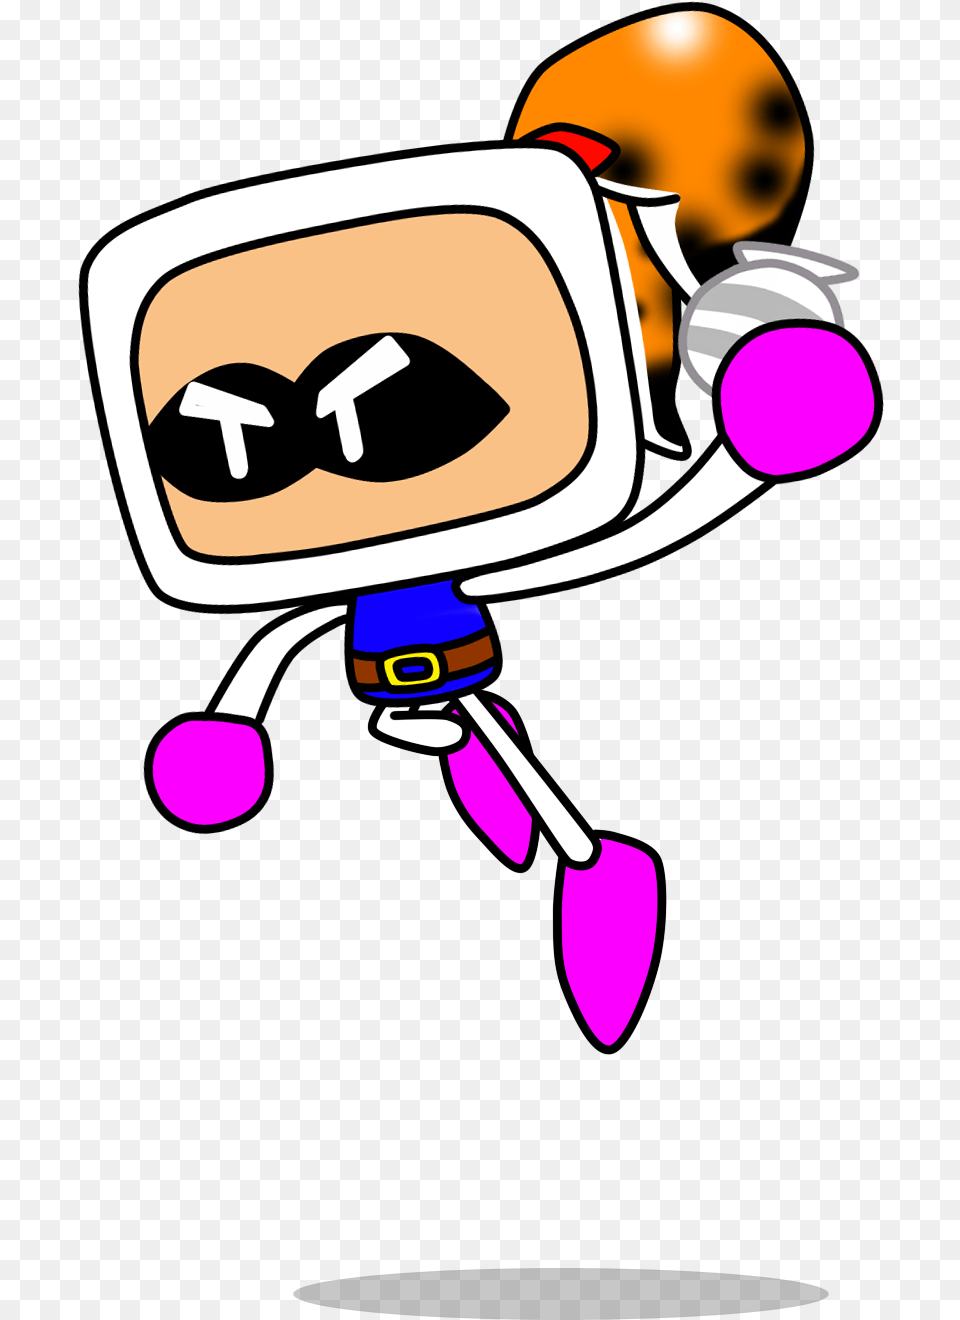 Bomberman Png Image